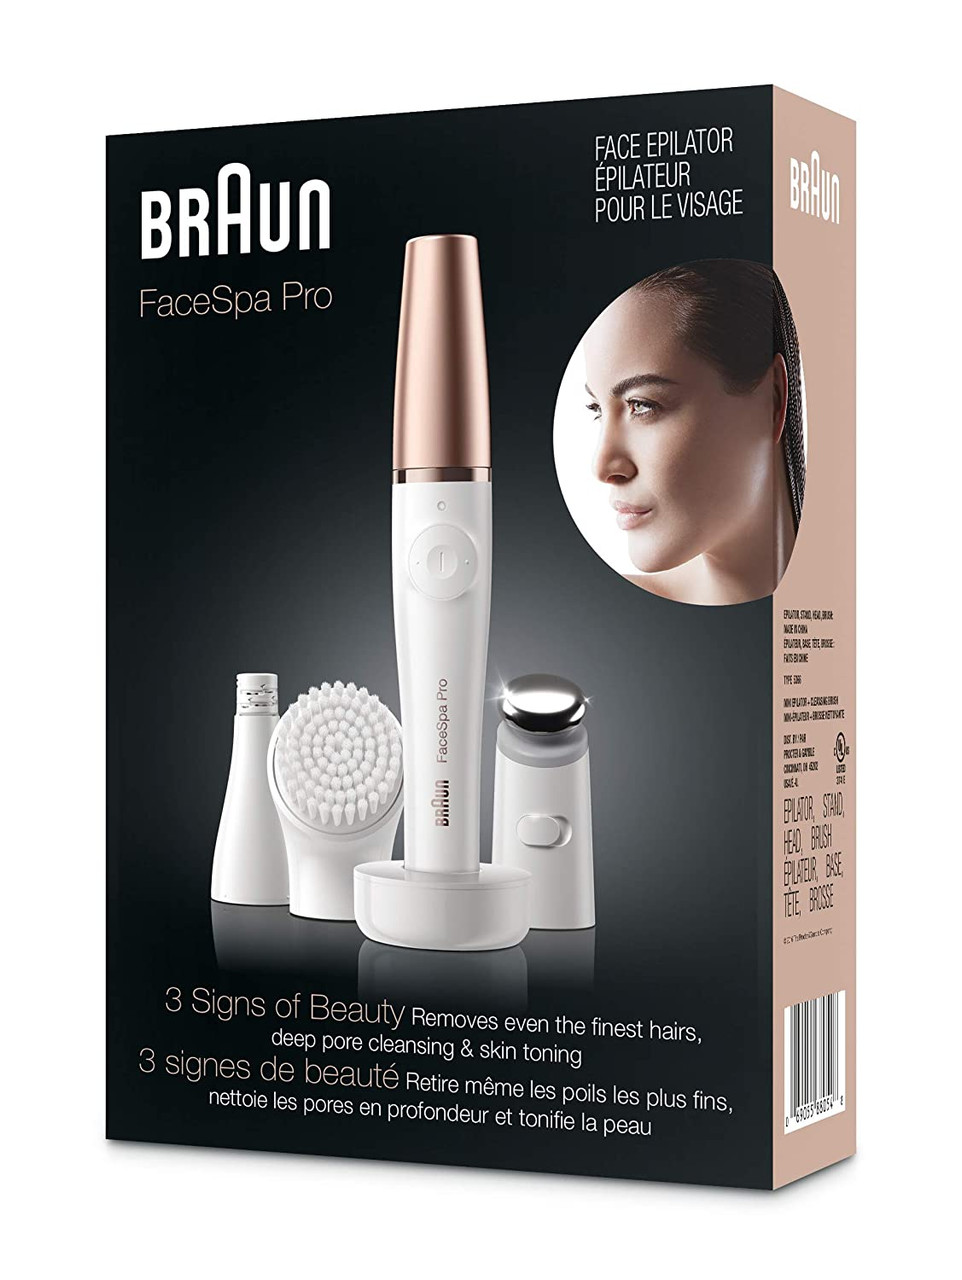 Braun Face Epilator Facespa Pro 911, Facial Hair Removal for Women